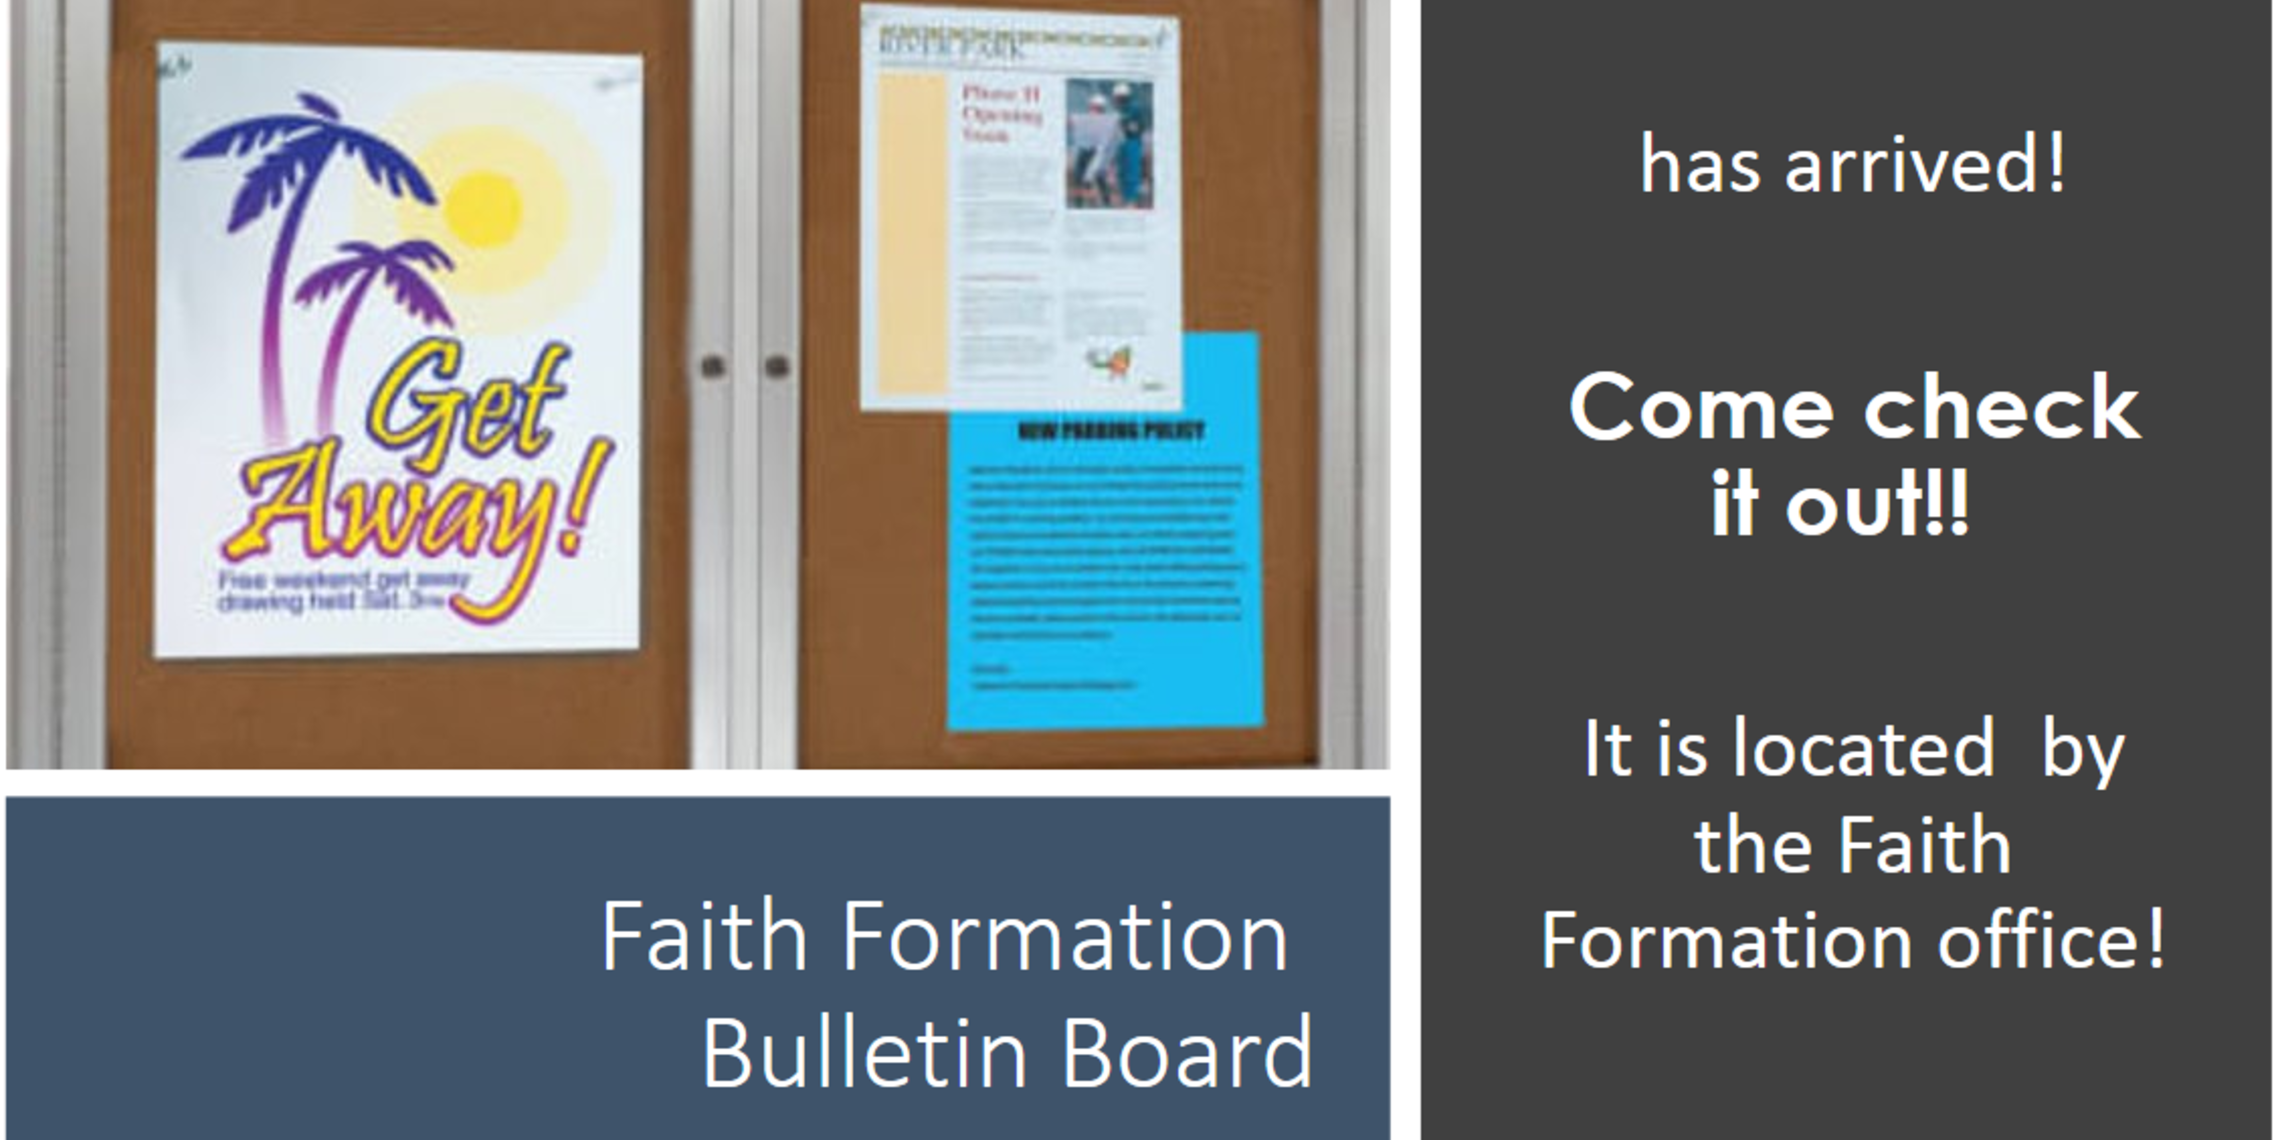 Faith Formation Bulletin Board Arrival